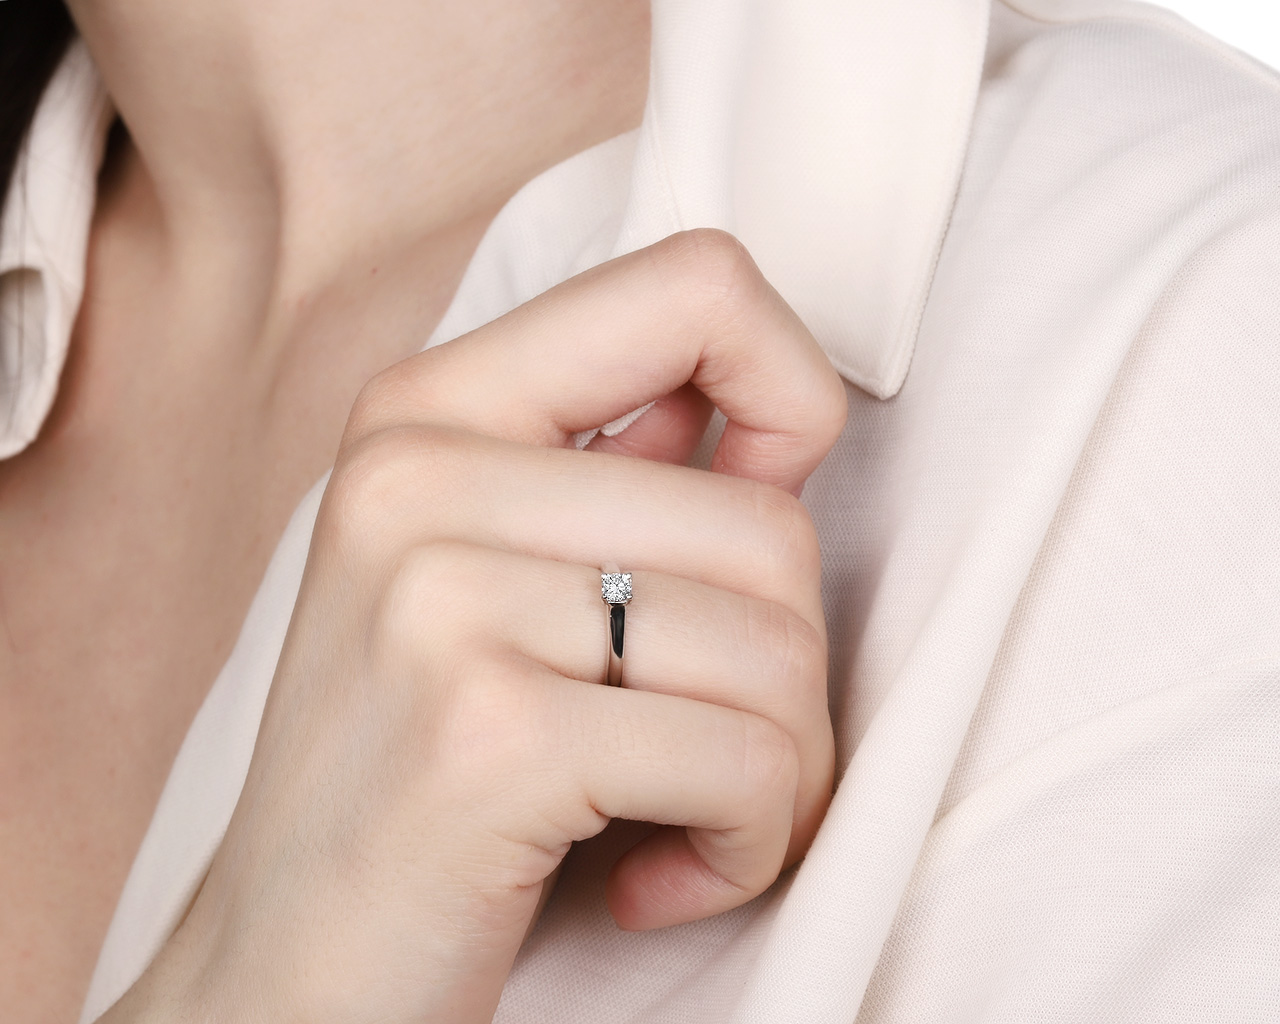 Оригинальное платиновое кольцо с бриллиантом 0.30ct Tiffany&Co Lucida